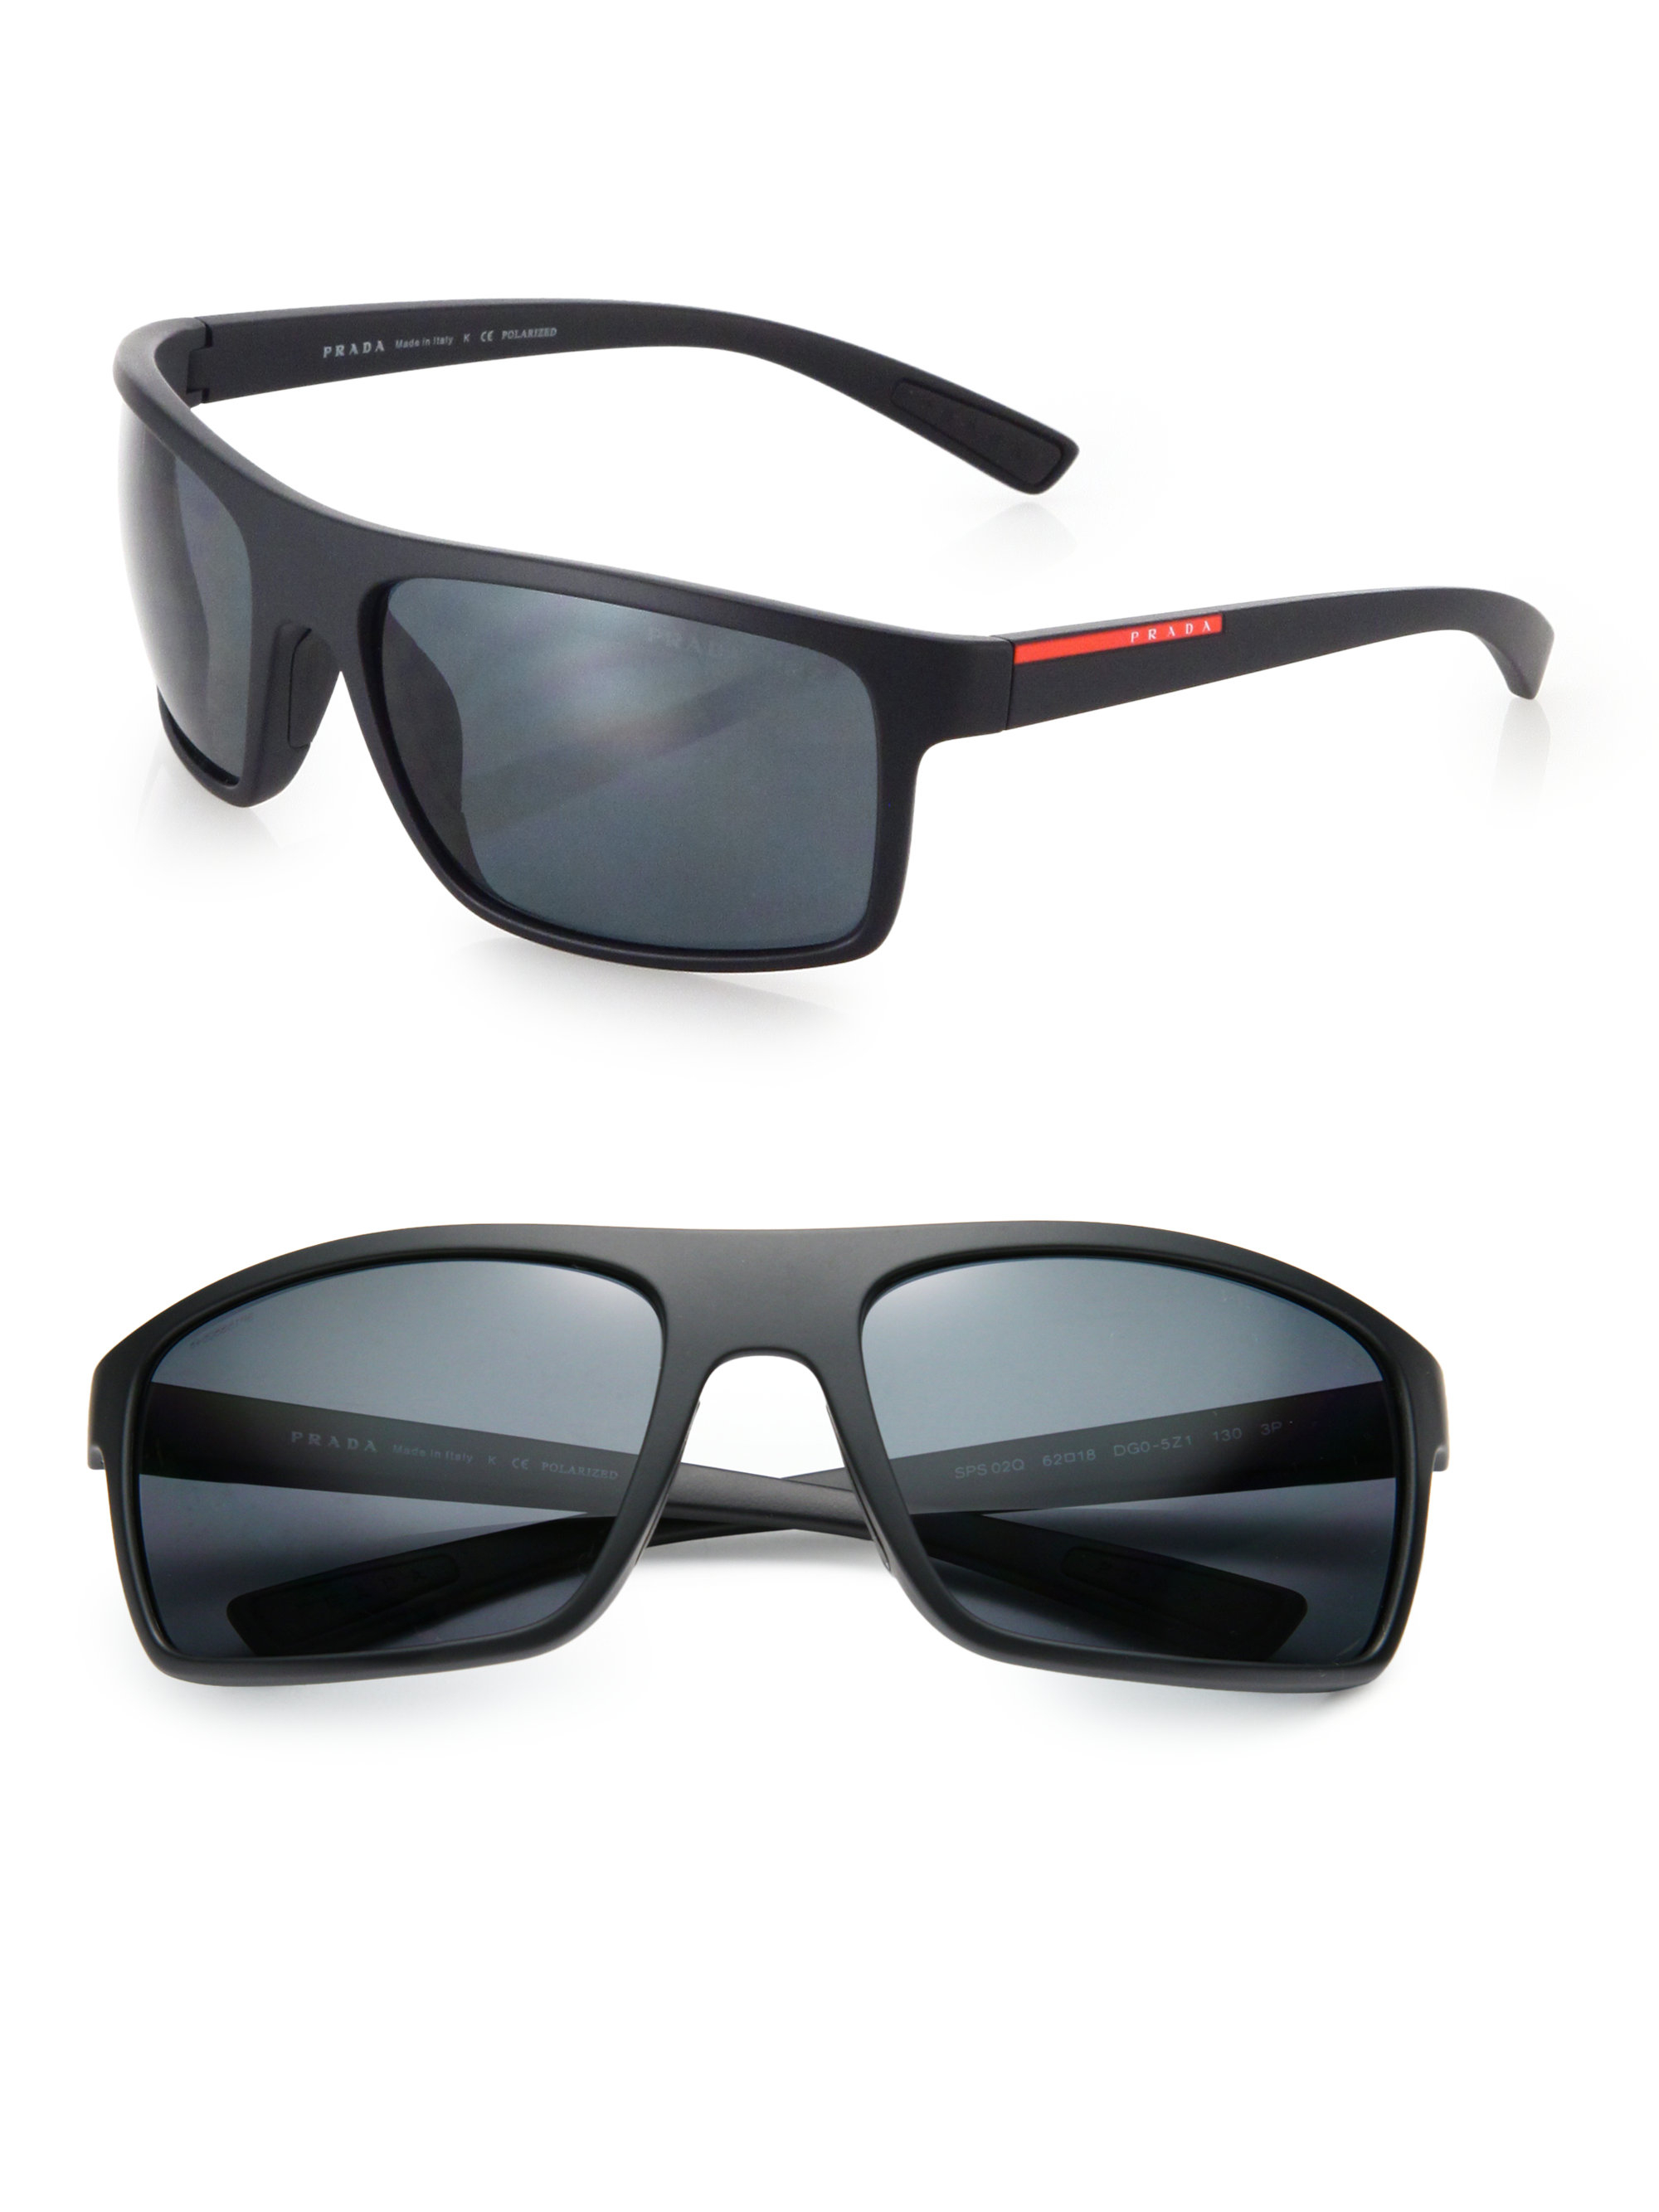 Prada 62Mm Rectangle Sunglasses in Black for Men - Lyst